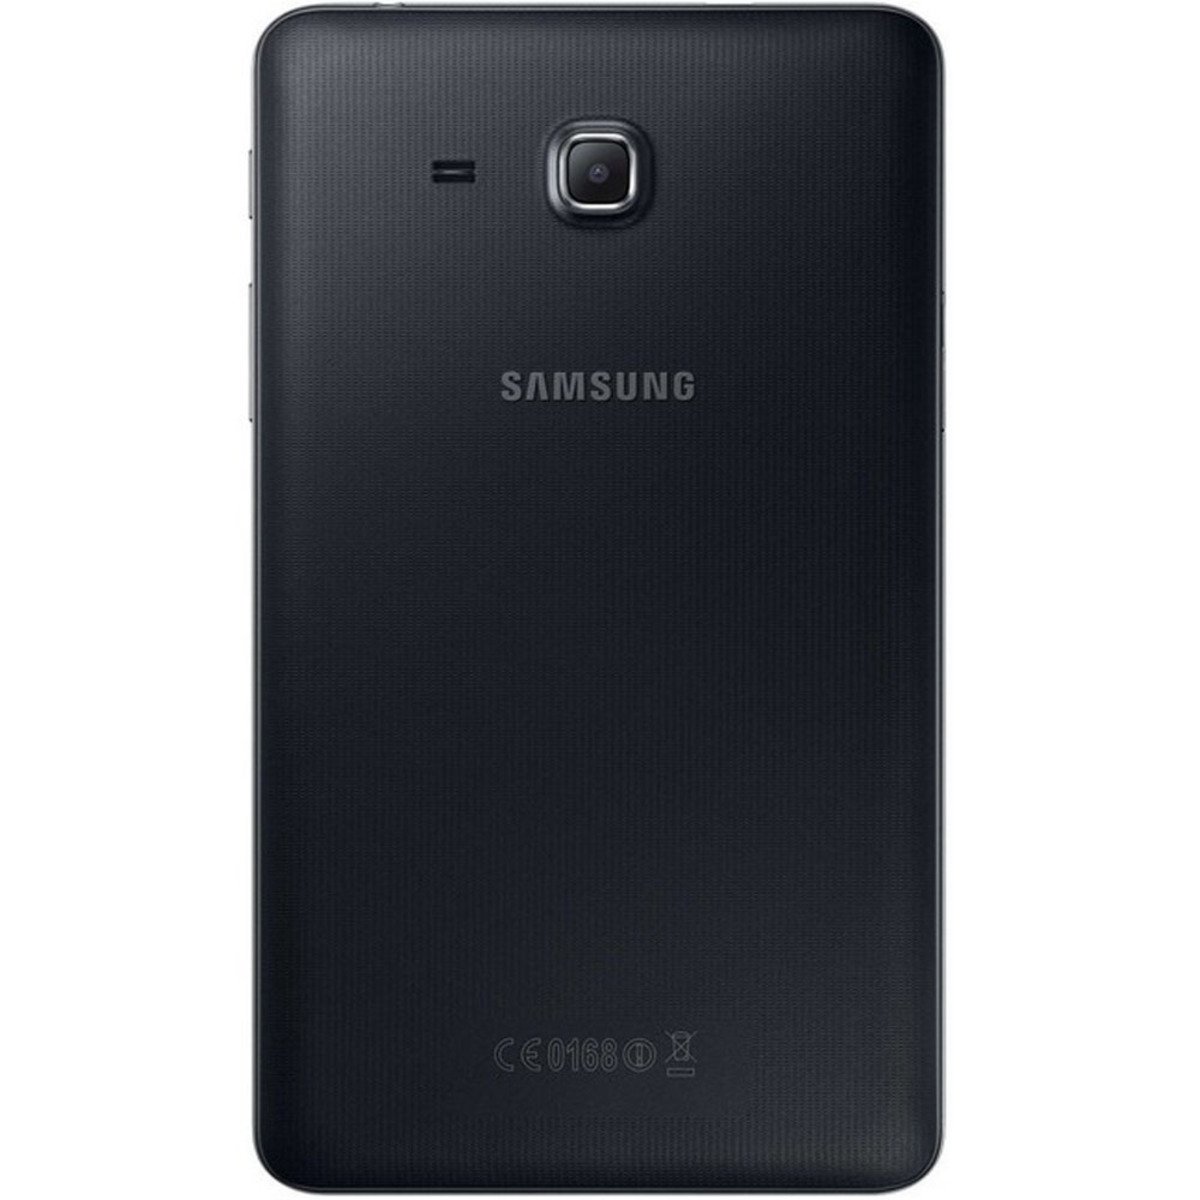 Samsung Galaxy TabA Wi-Fi SMT280 7inch 8GB Black